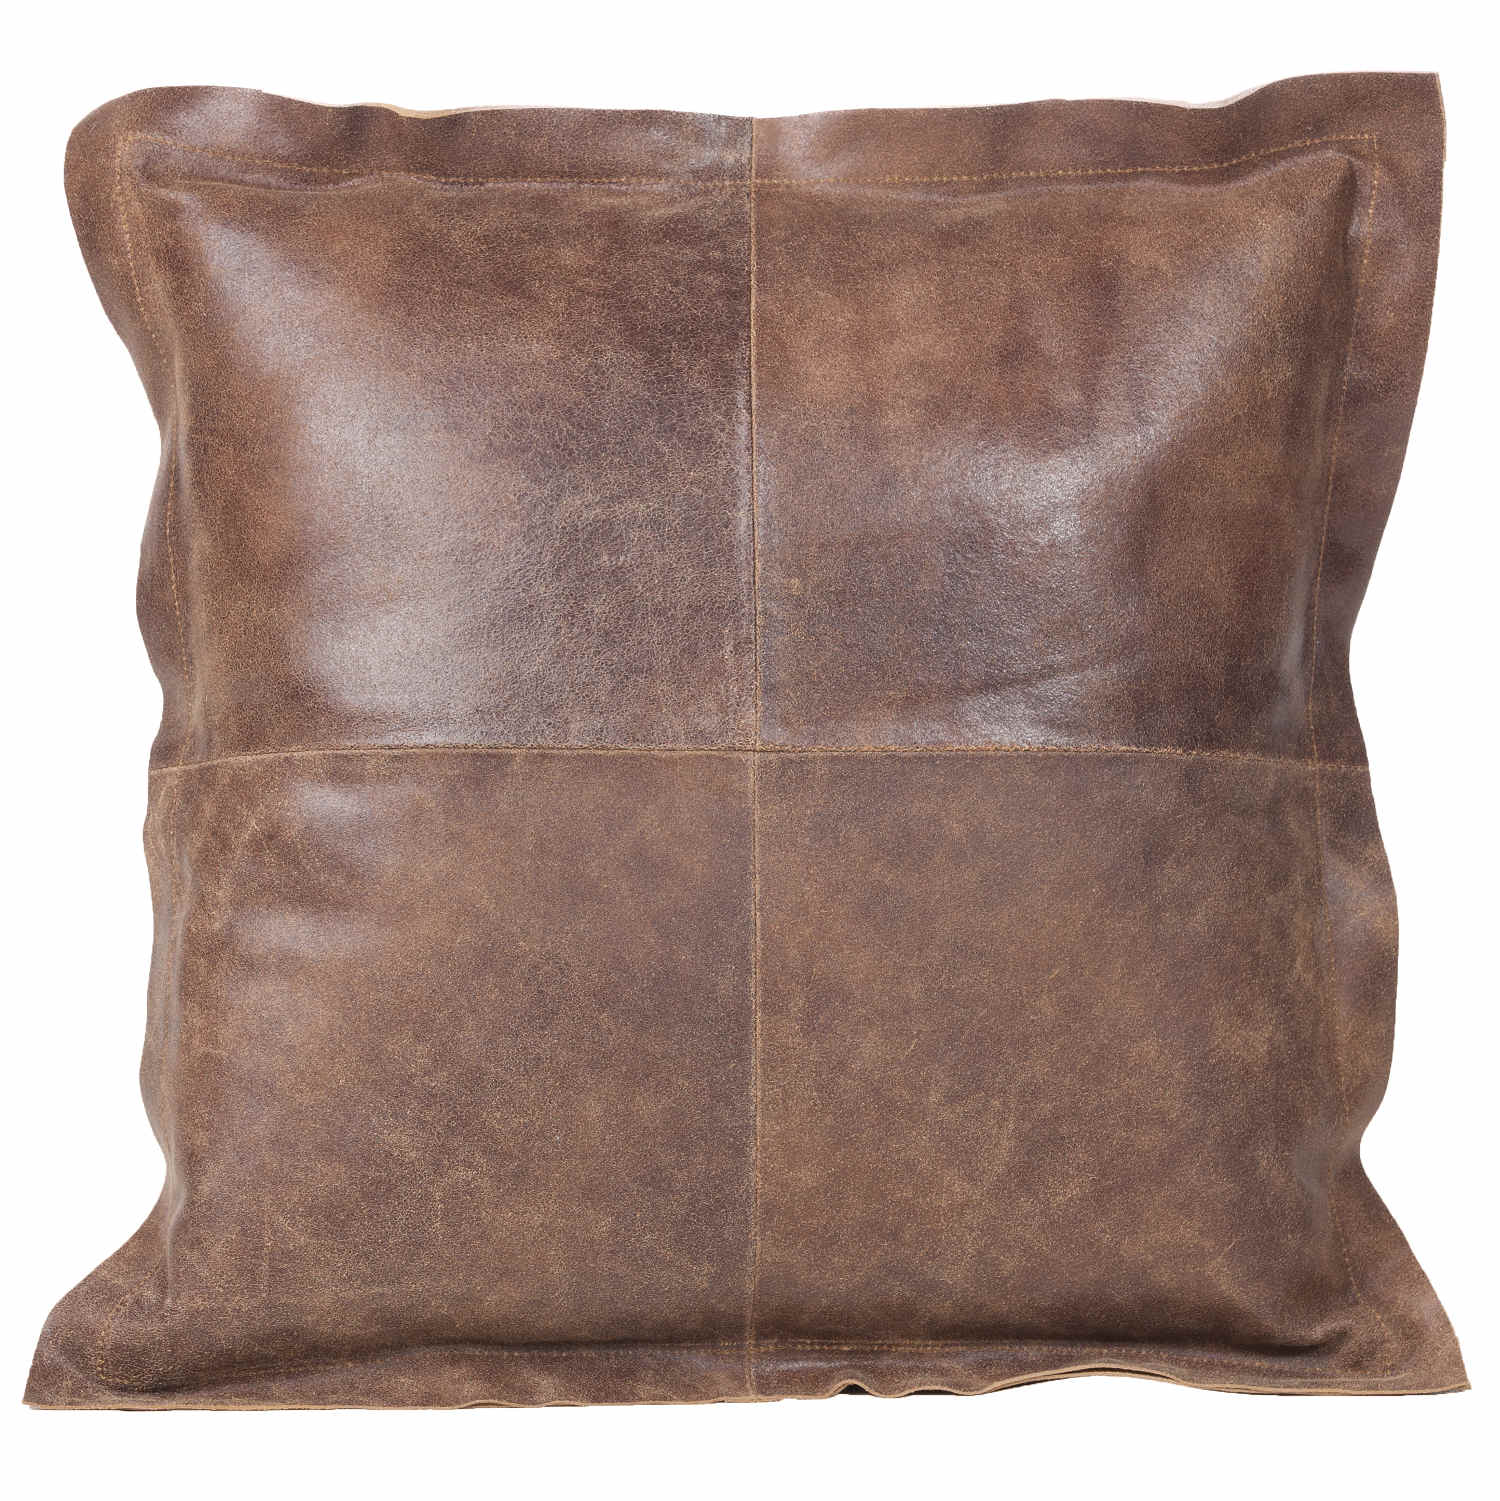 *Fibre by Auskin Vintage Brown Cowhide Decorative Pillows